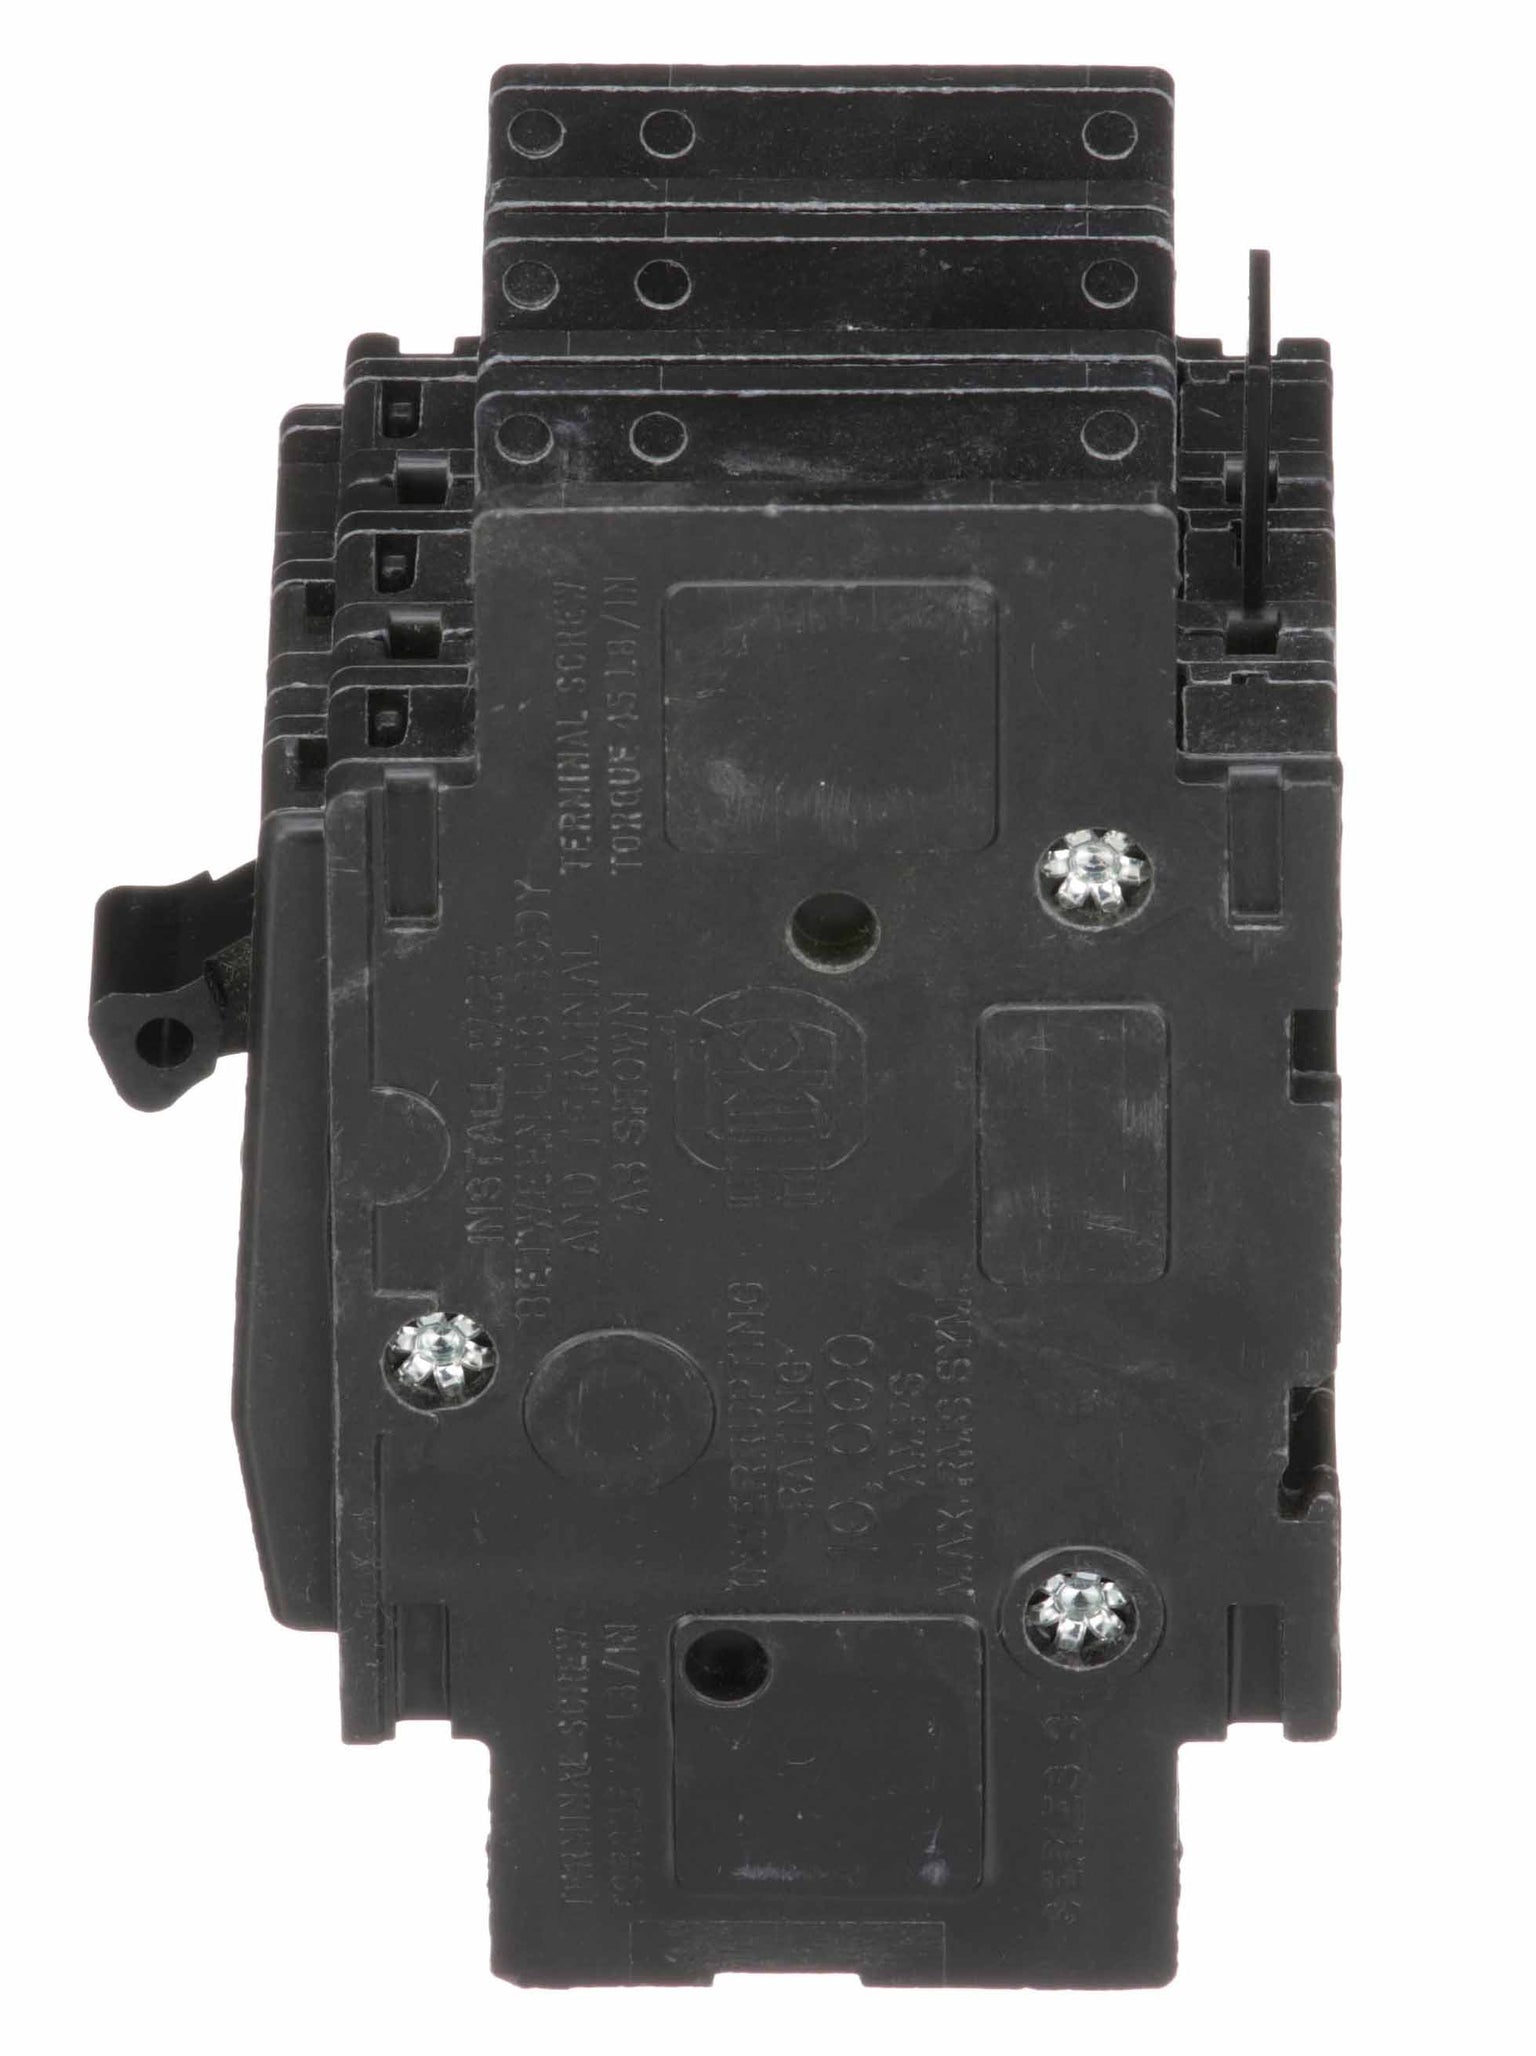 QOU315 - Square D - 15 Amp Circuit Breaker